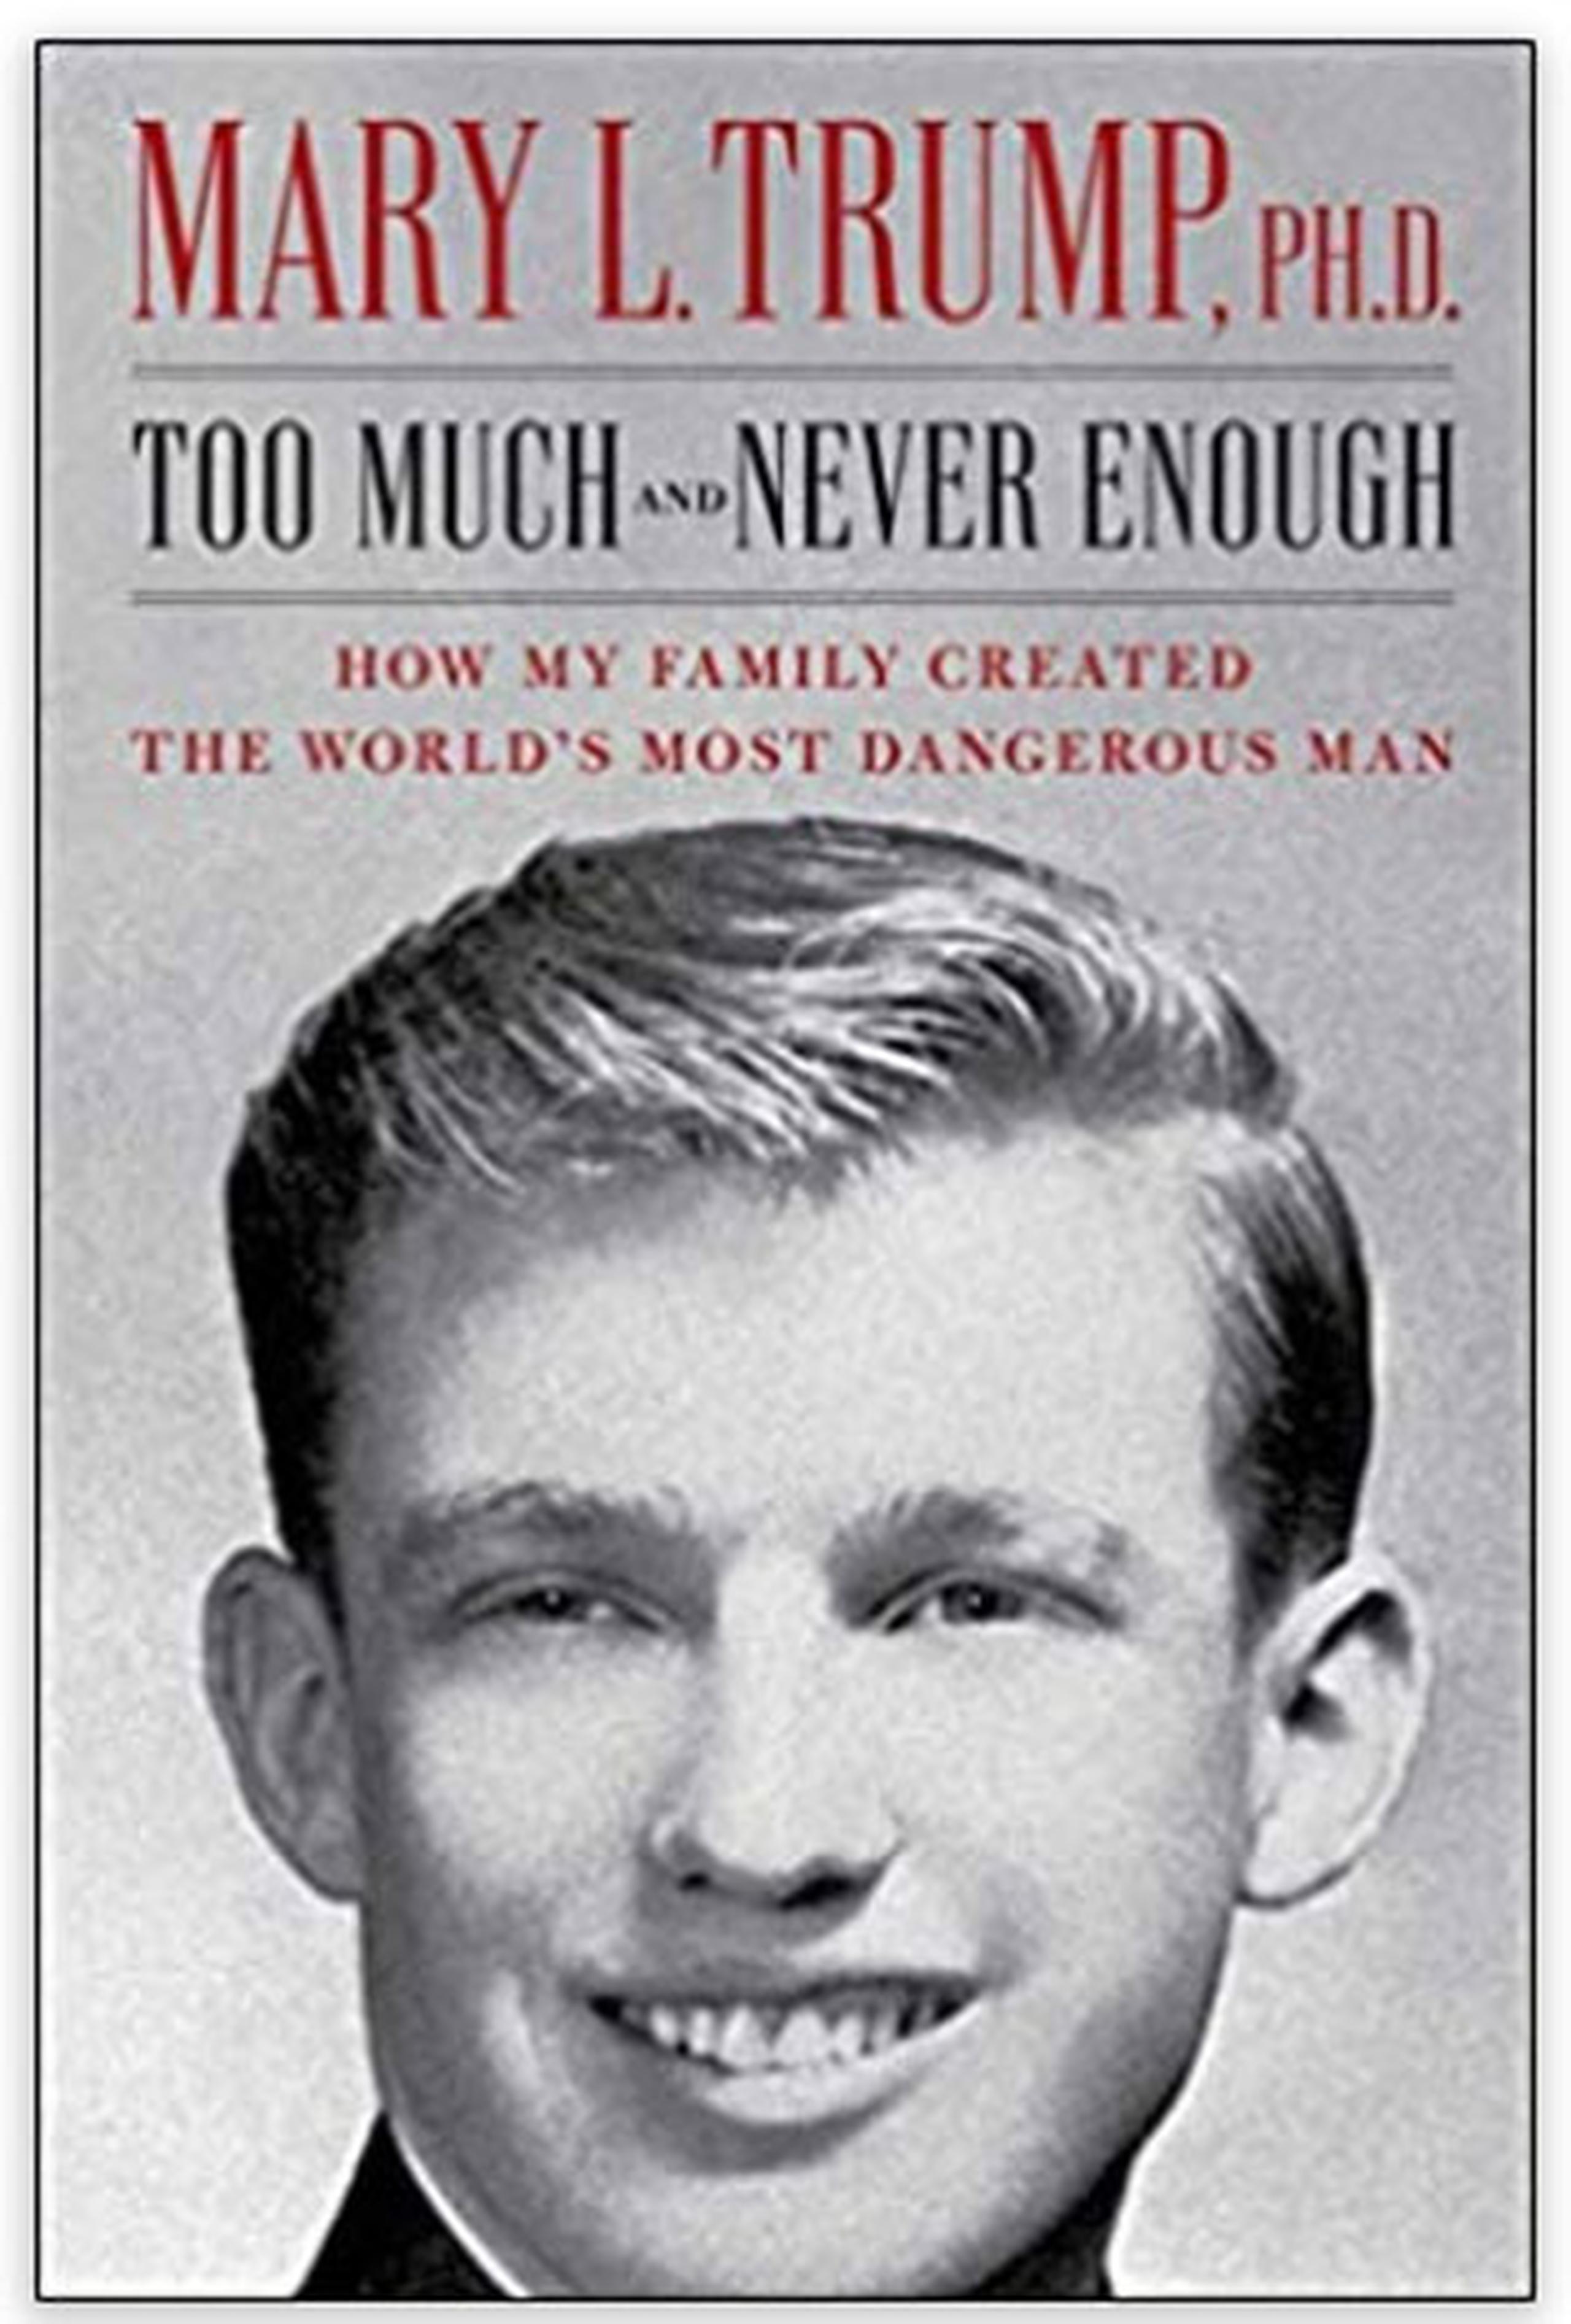 Libro sobre la familia de Donald Trump.